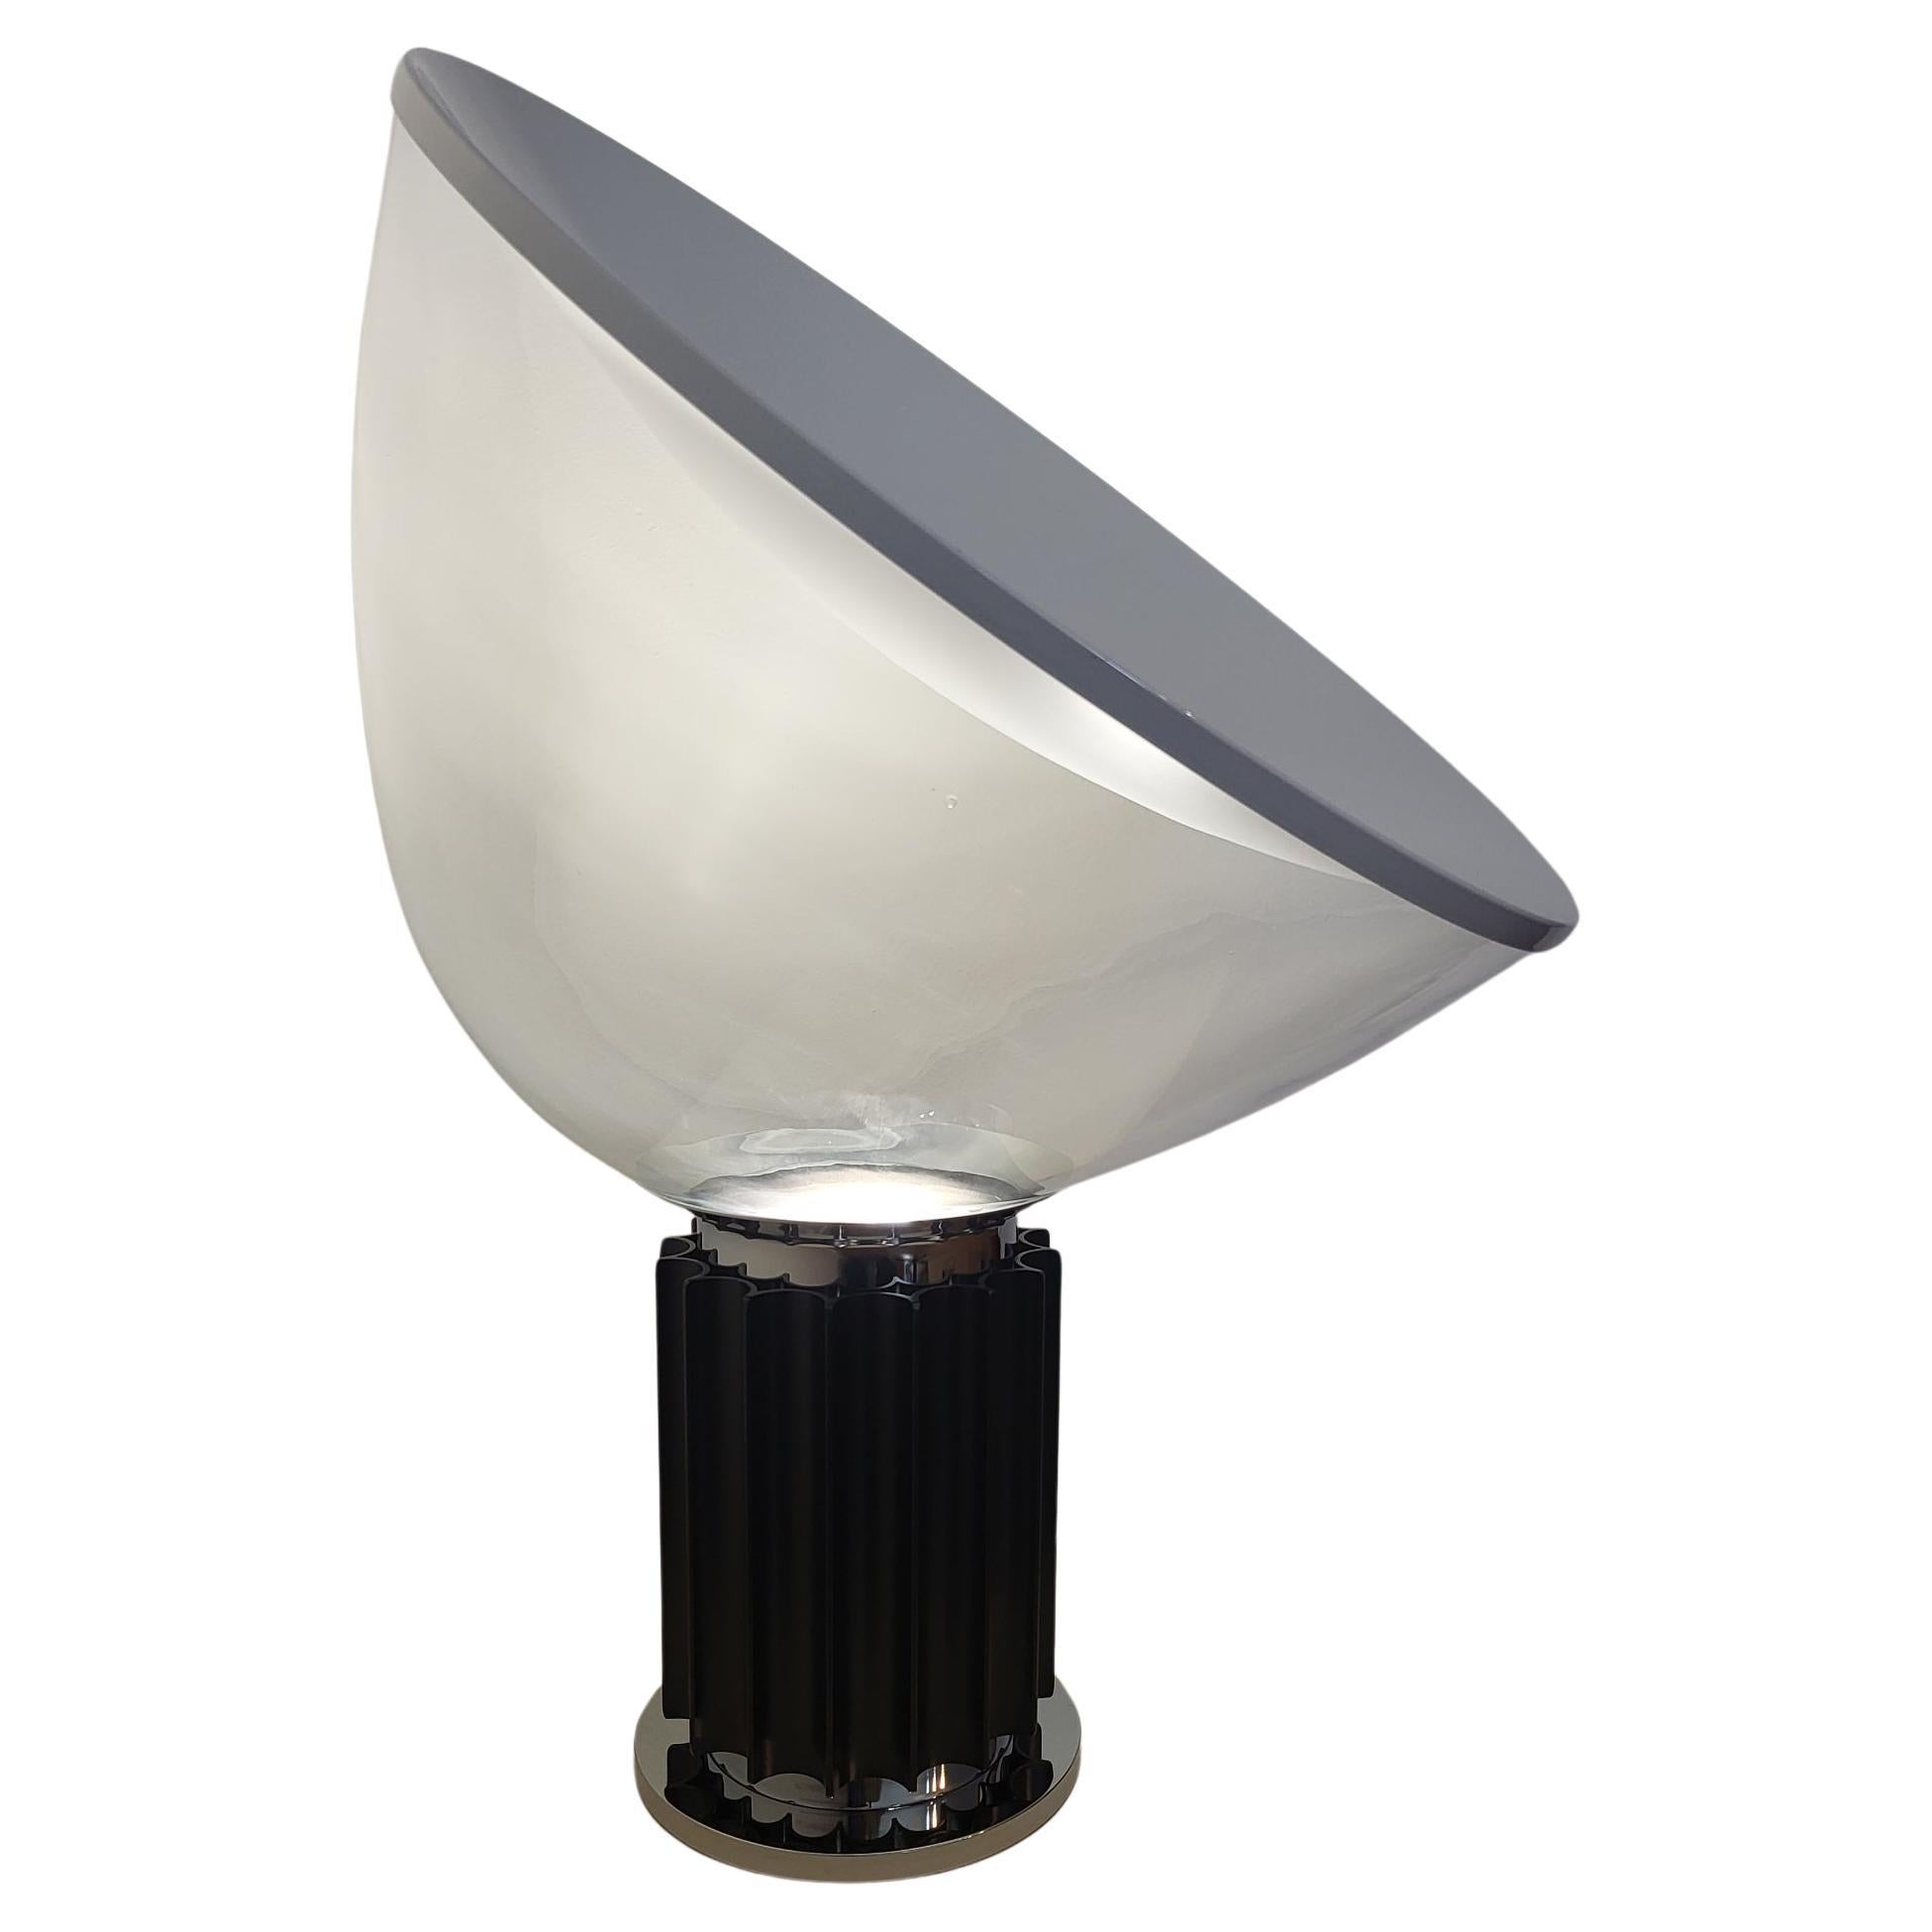 Lampe Taccia modèle XXL le plus grand. 
Design by Achille and Pier Giacomo Castiglioni , 1962
 Editée par FLOS Lampe de table à lumière indirecte et réfléchie. 
Réflecteur en aluminium peint blanc laqué sur la face externe et blanc mat sur la face